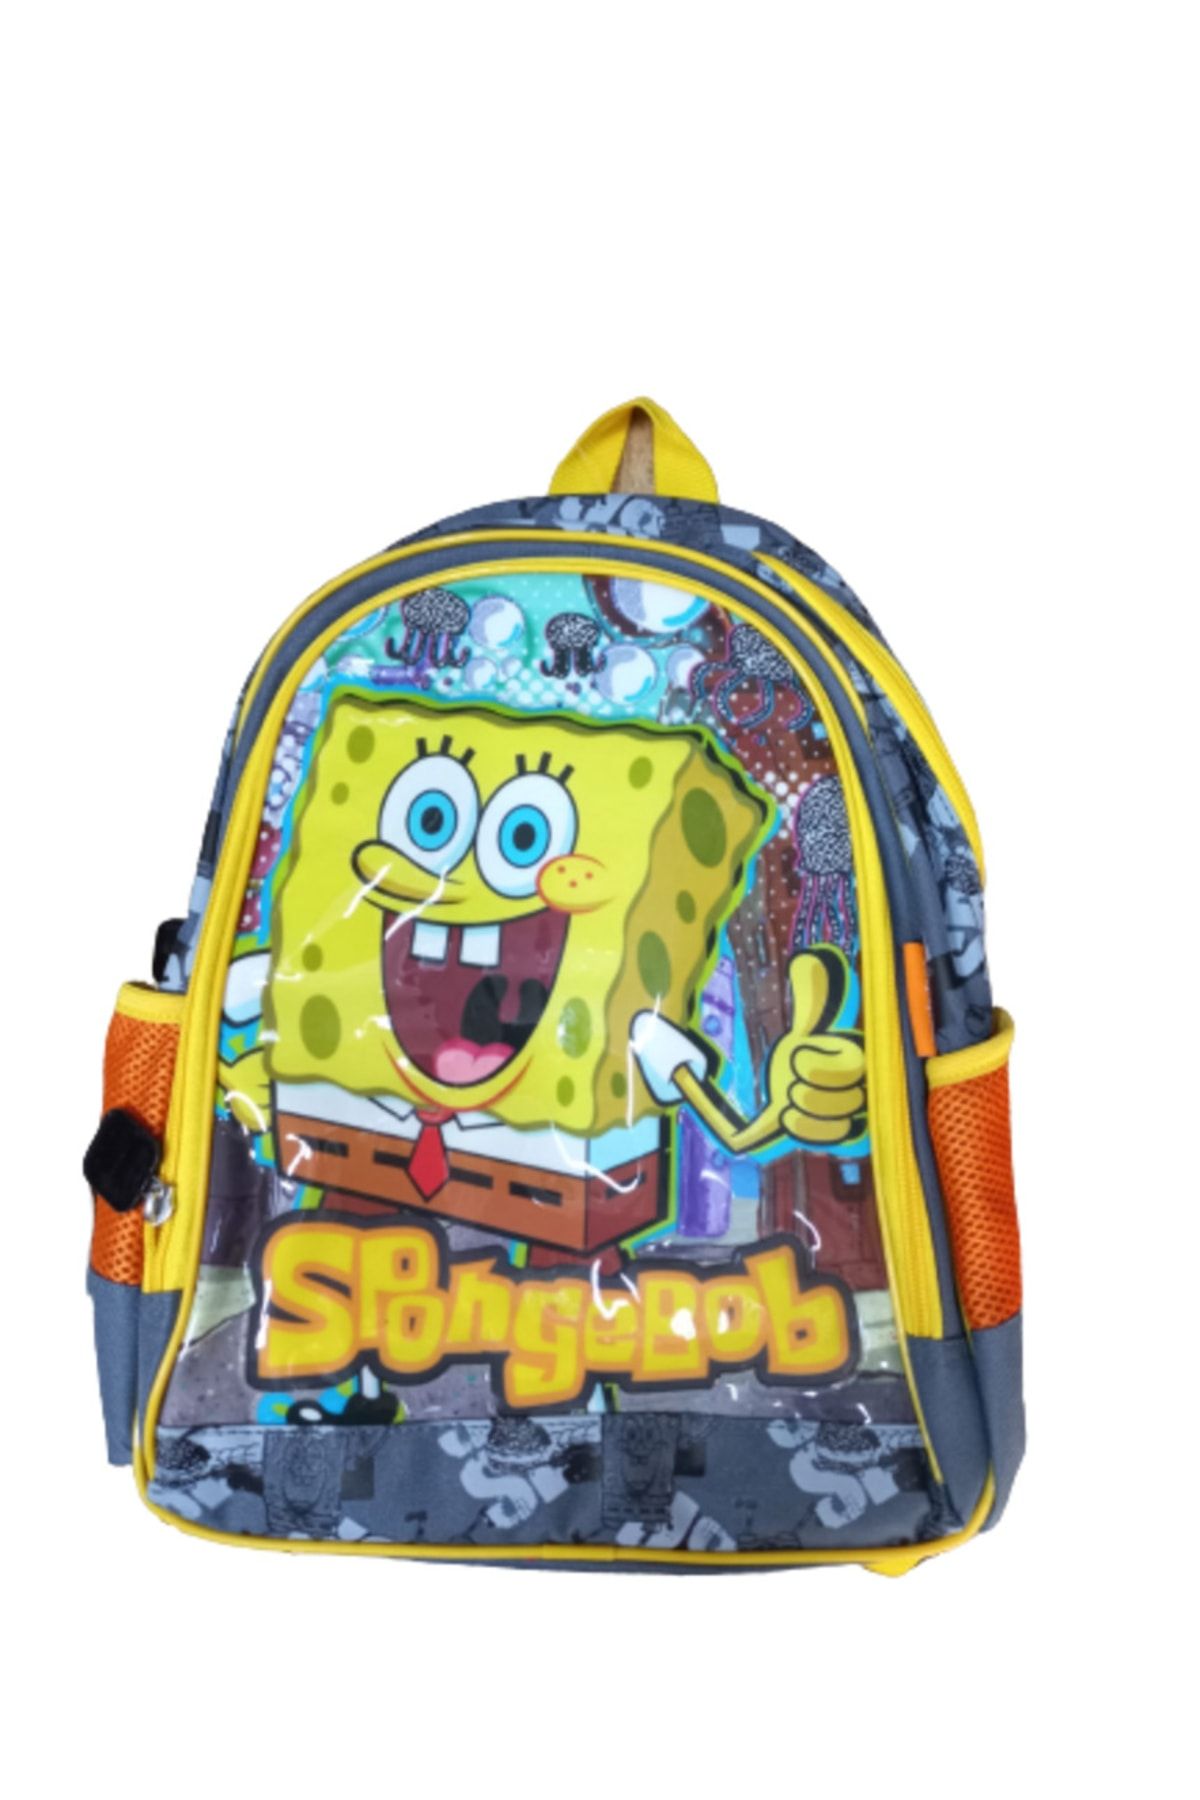 Hakan Çanta Spongebob 63110 Okul Çantası